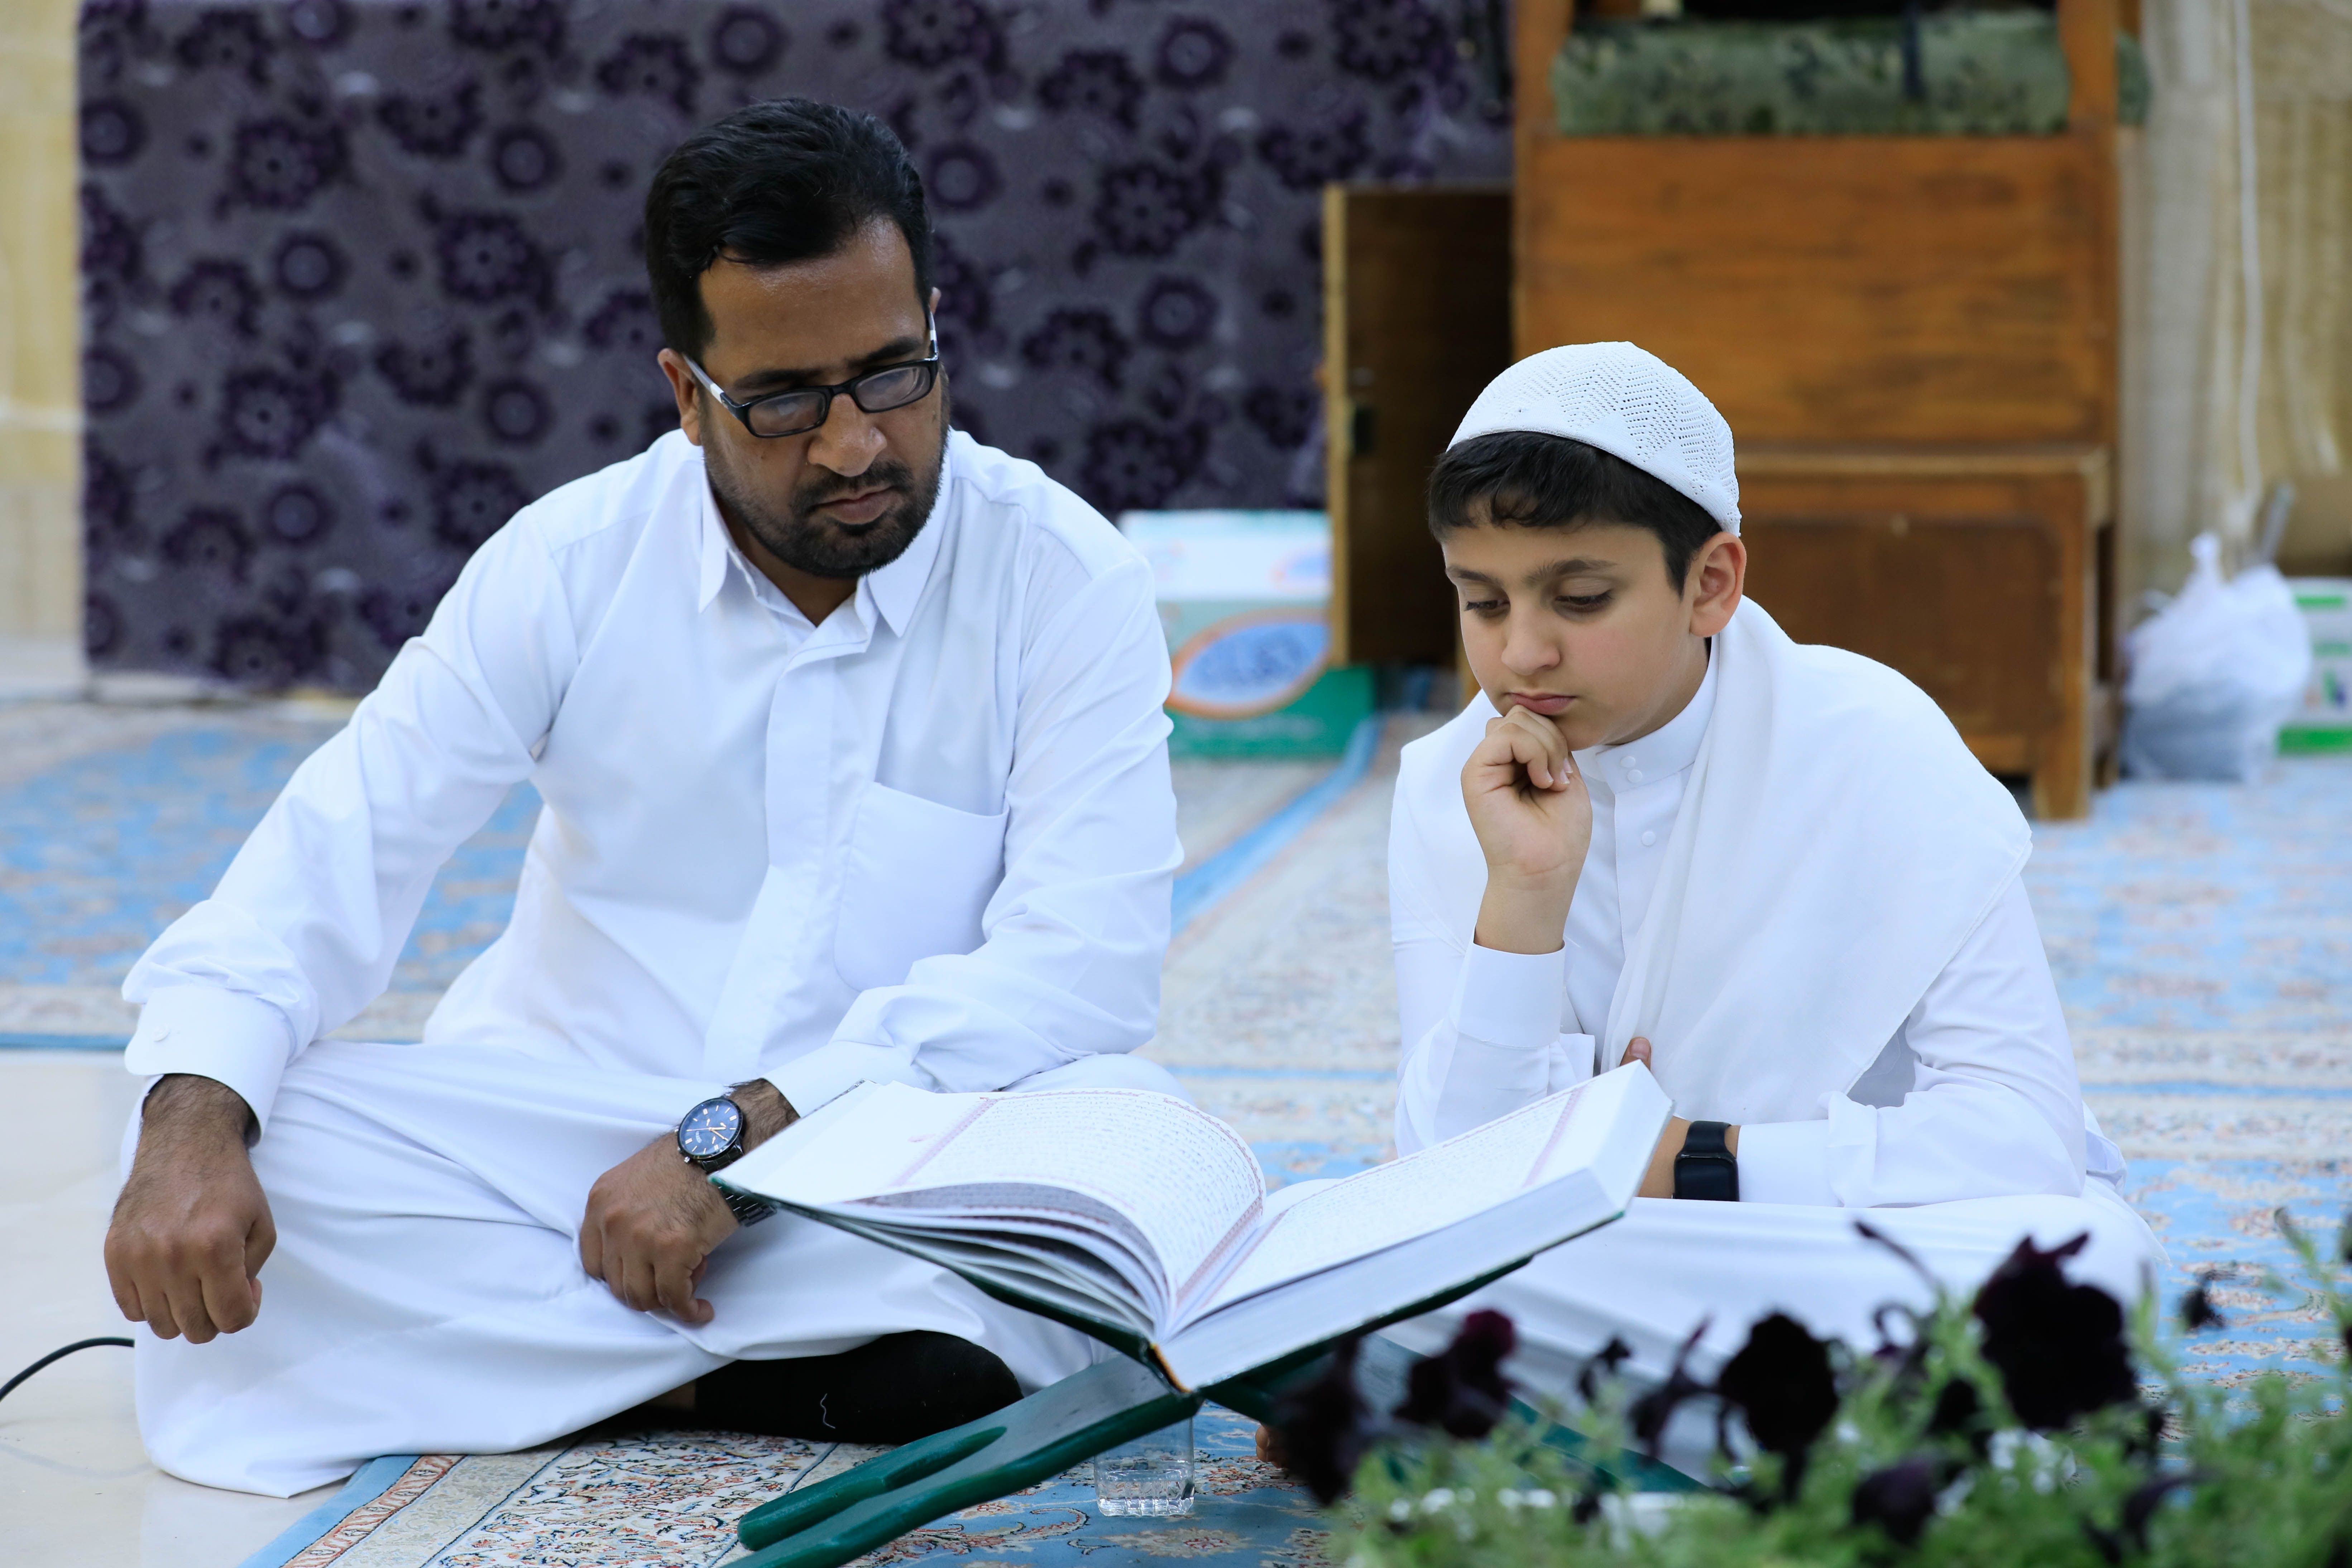 حناجر طلاب المعهد تصدح بآيات الله حفظًا في مقام الإمام المهدي (عج)